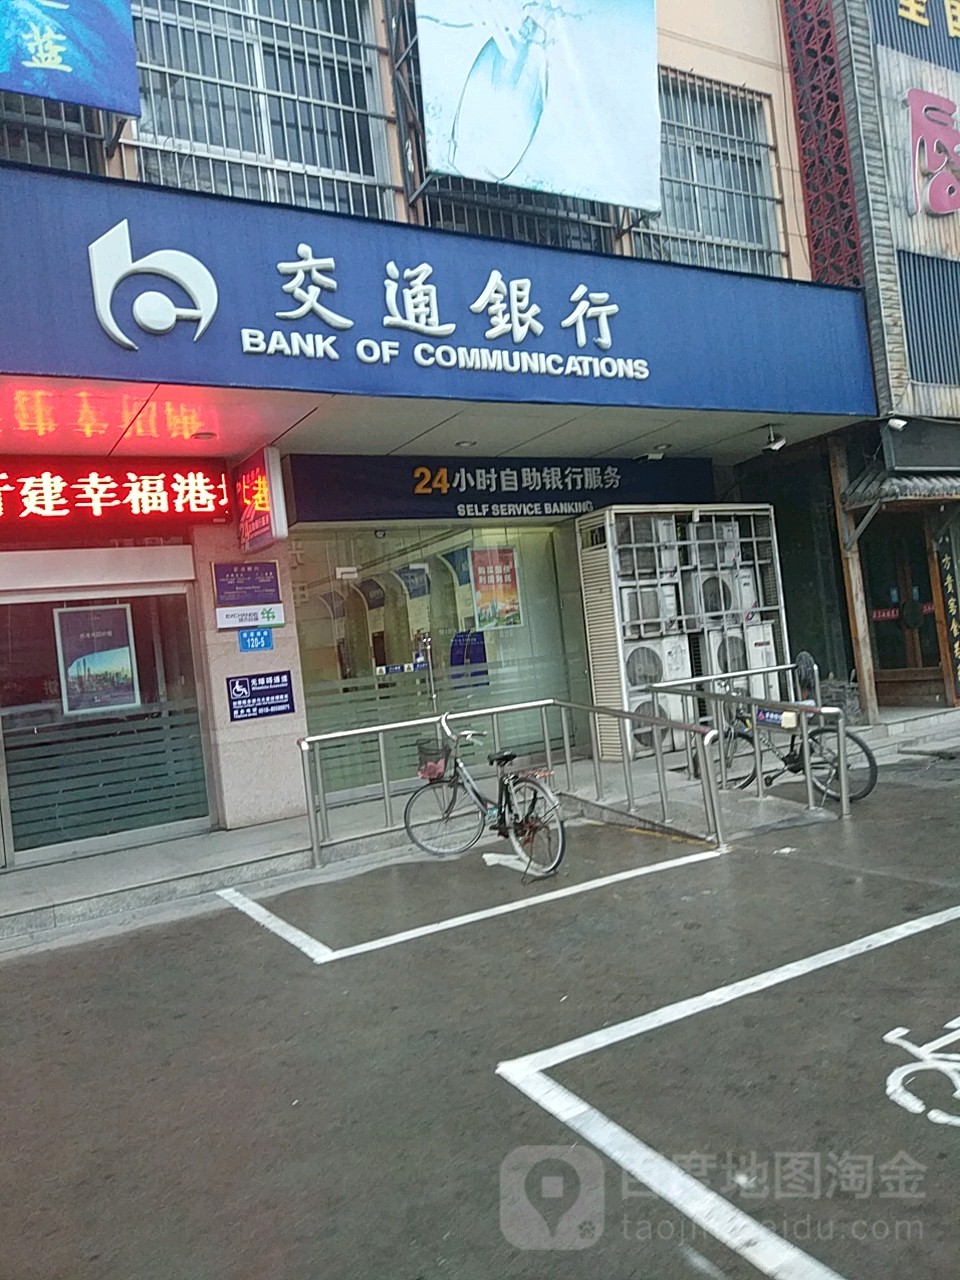 交通銀行24小時自助銀行服務(連云港玉龍支行)